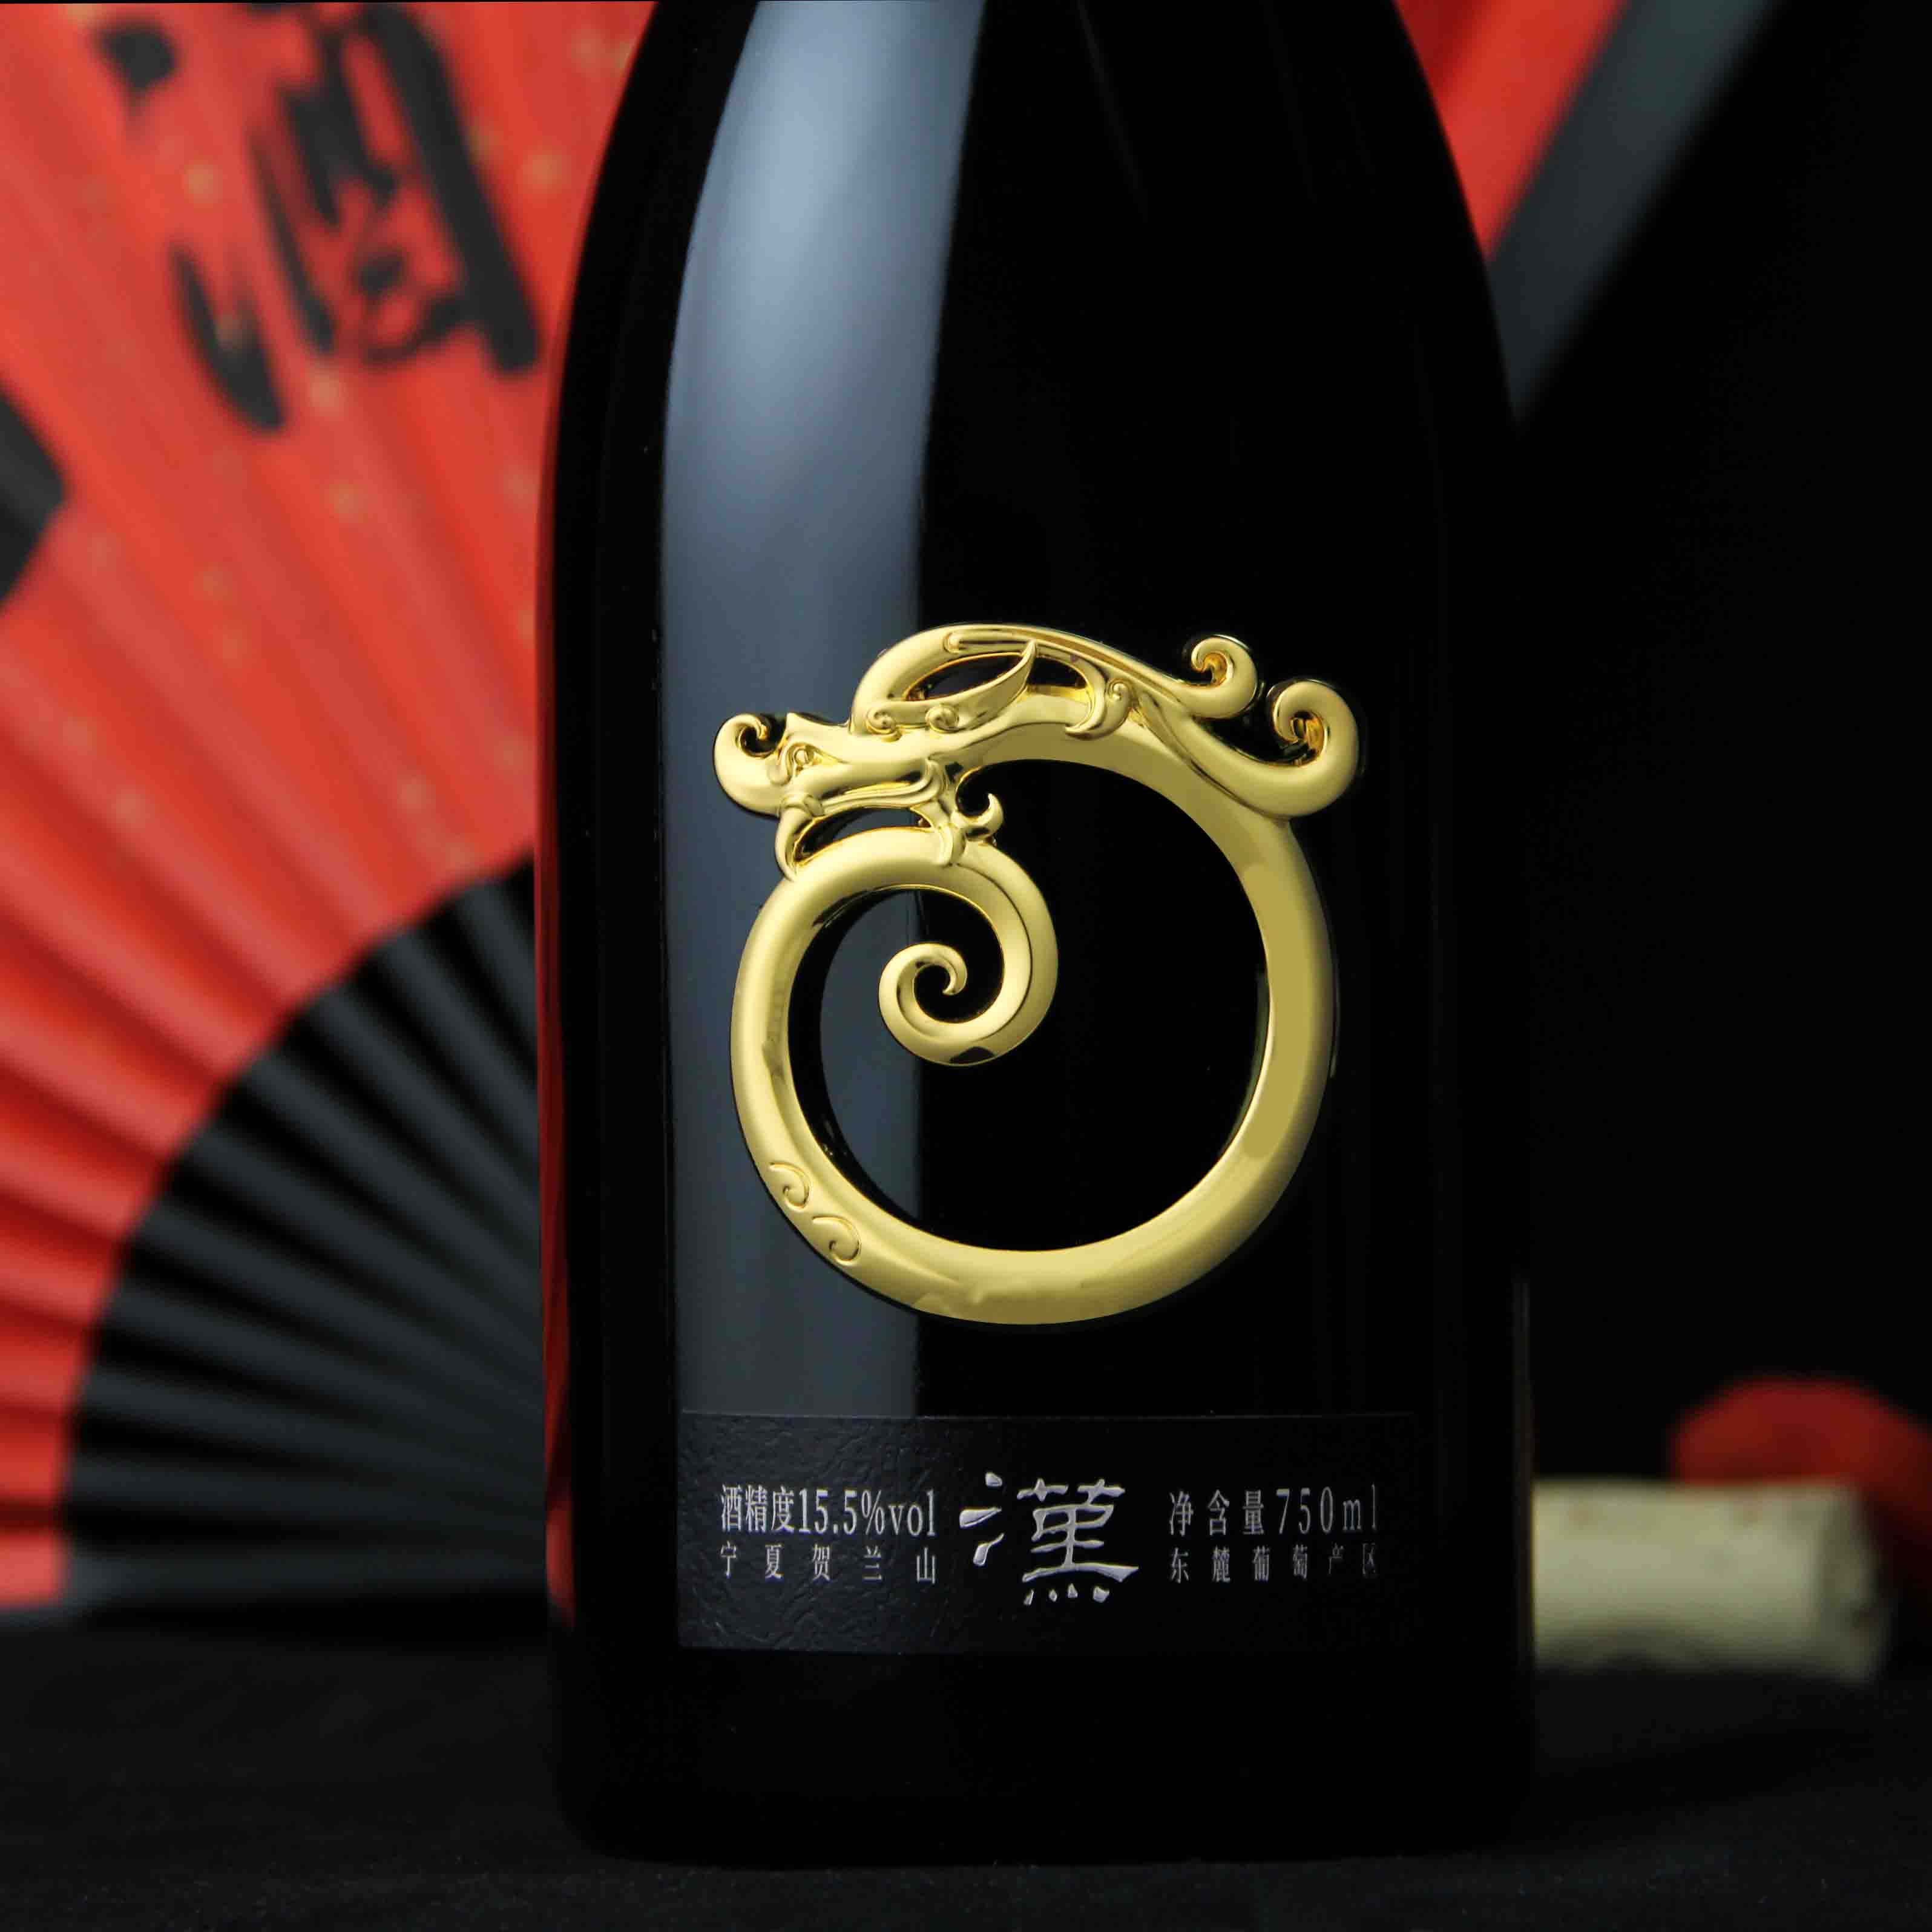 中国公元·汉中式劲香赤霞珠葡萄酒